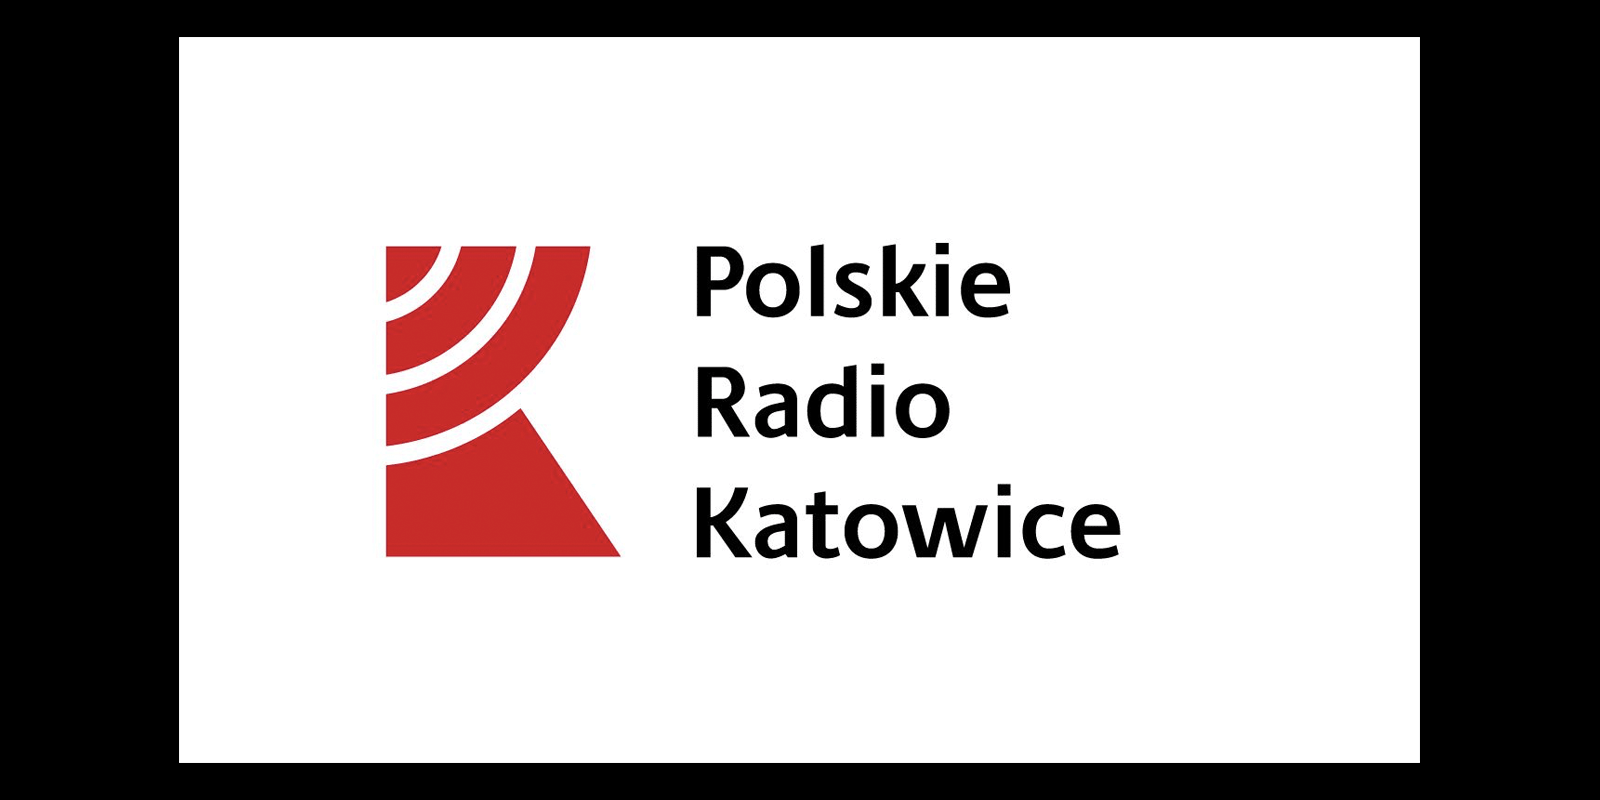 Polskie Radio Katowice w stanie likwidacji Polskie Radio MEDIARUN COM POLSKIE RADIO KATOWICE LIWIDACJA V1